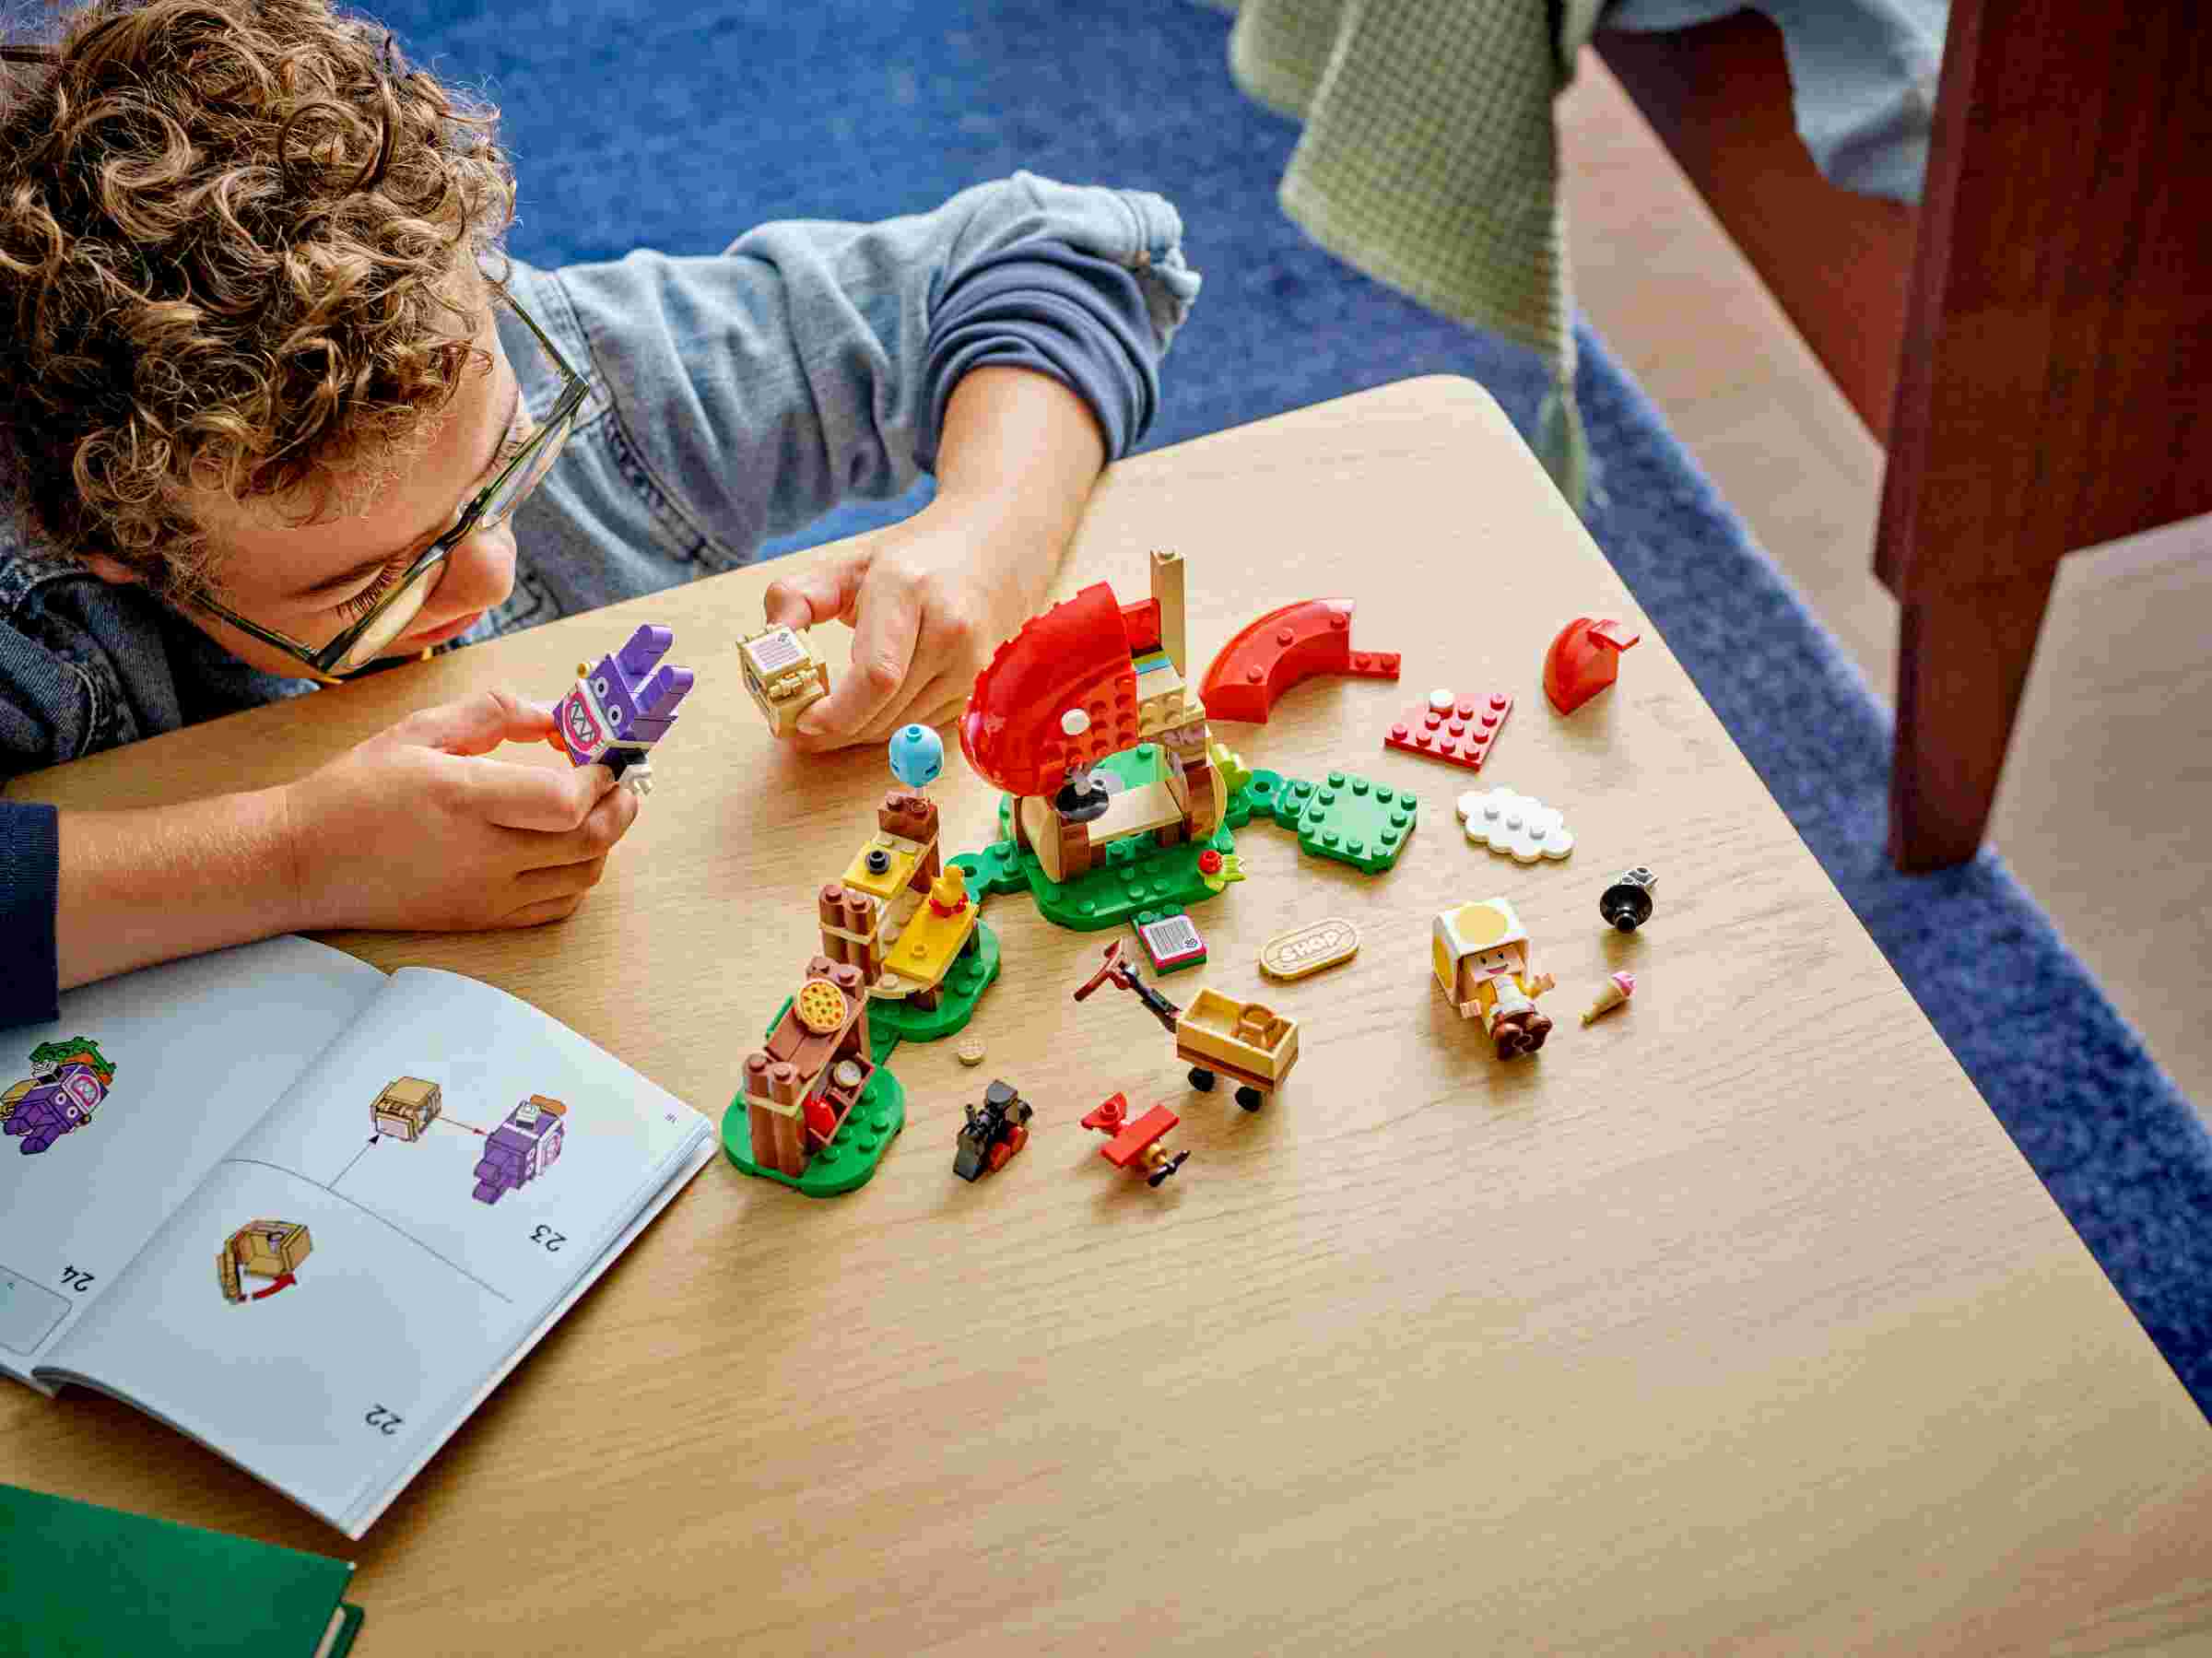 LEGO 71429 Super Mario Mopsie in Toads Laden – Erweiterungsset, gelber Toad